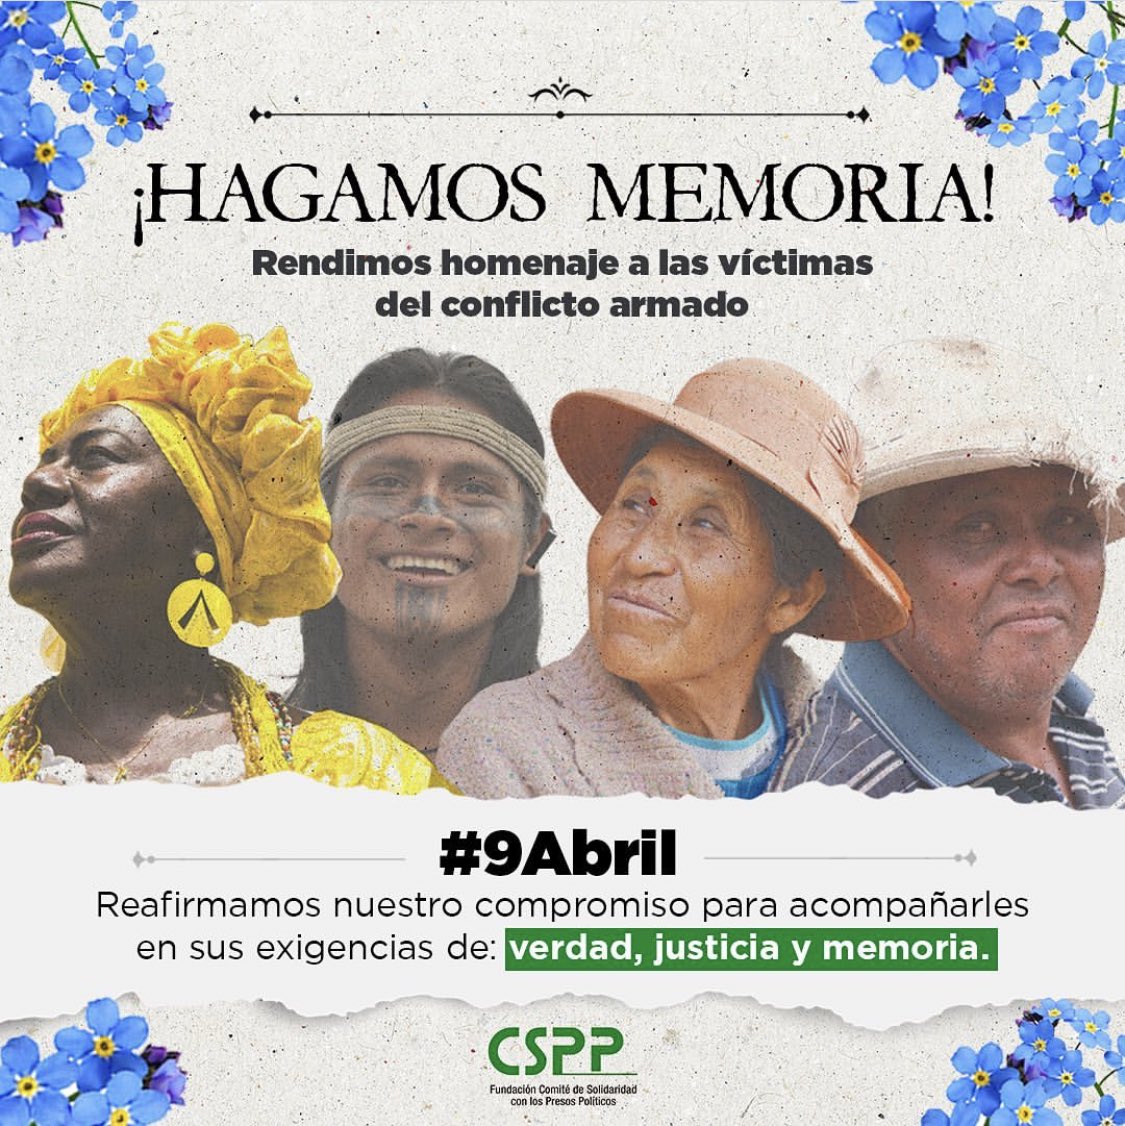 #Comunicado📑 🕊️En el Día de las Víctimas #9A, honramos a quienes han sufrido en el conflicto armado. Como organizaciones defensoras de #DDHH exigimos participación vinculante en decisiones clave de la @JEP_Colombia que impacta derechos de las víctimas. n9.cl/yad8c